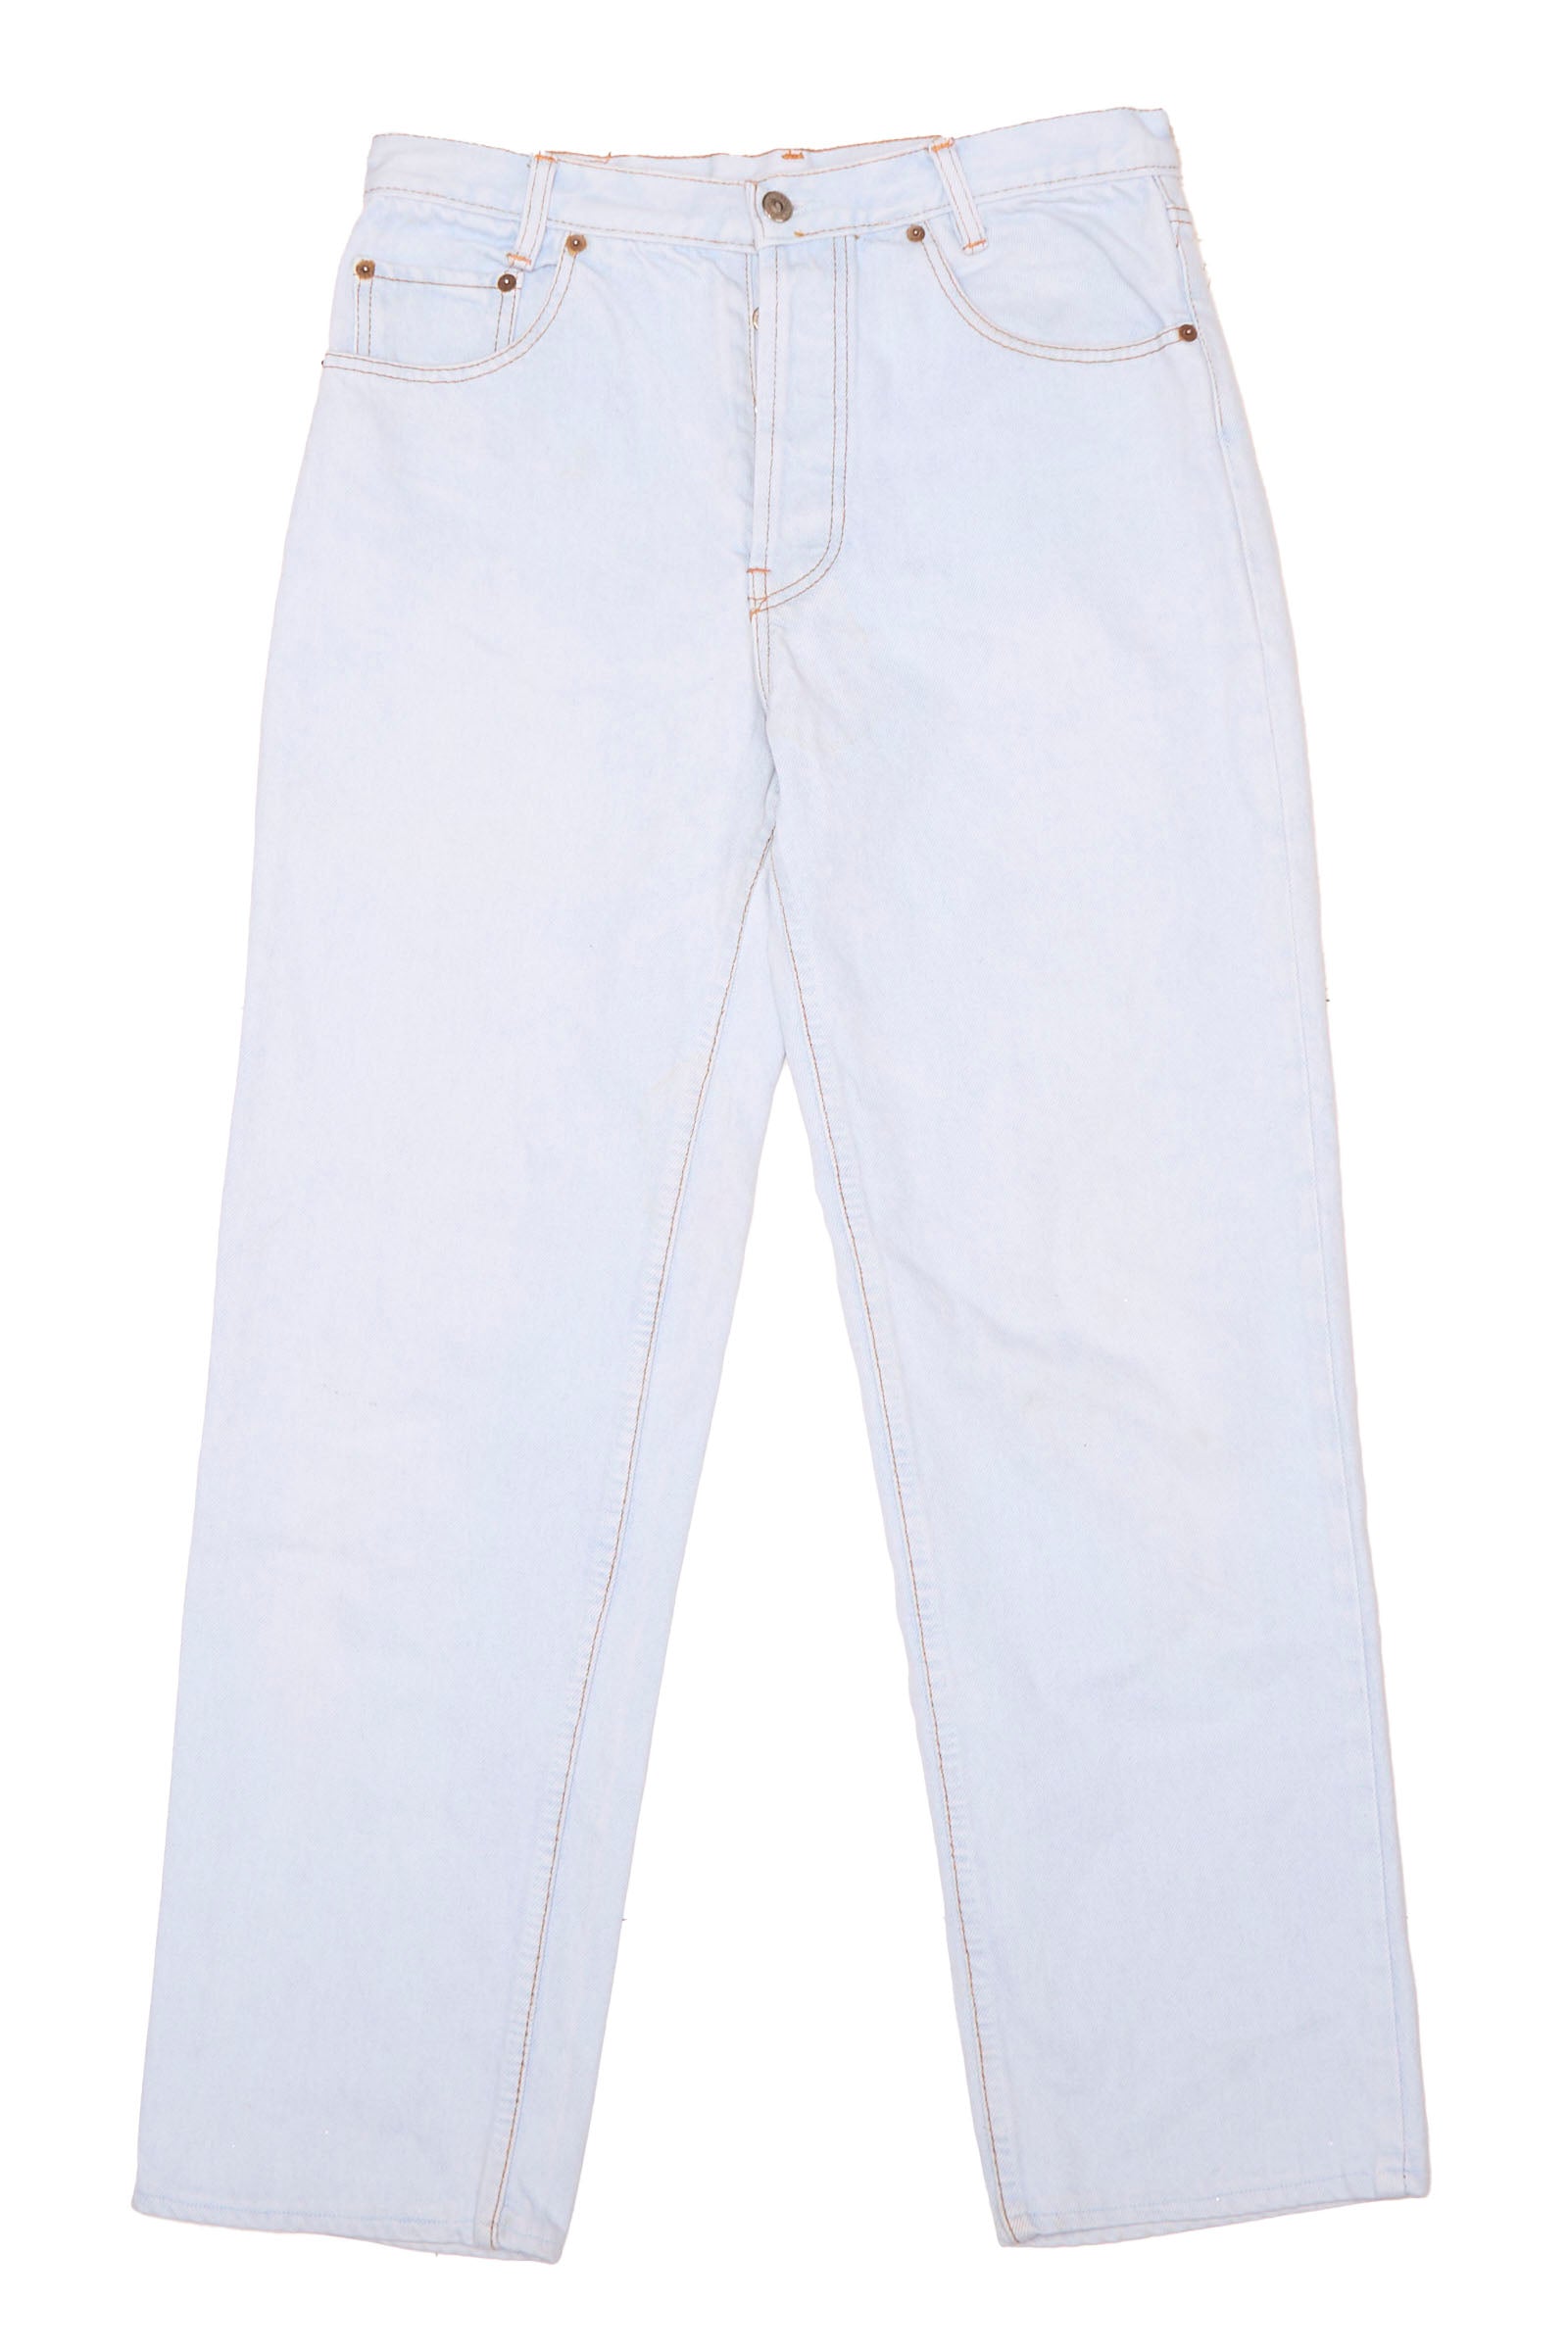 Button Up Levis Straight Cut Jeans - W32" L36"